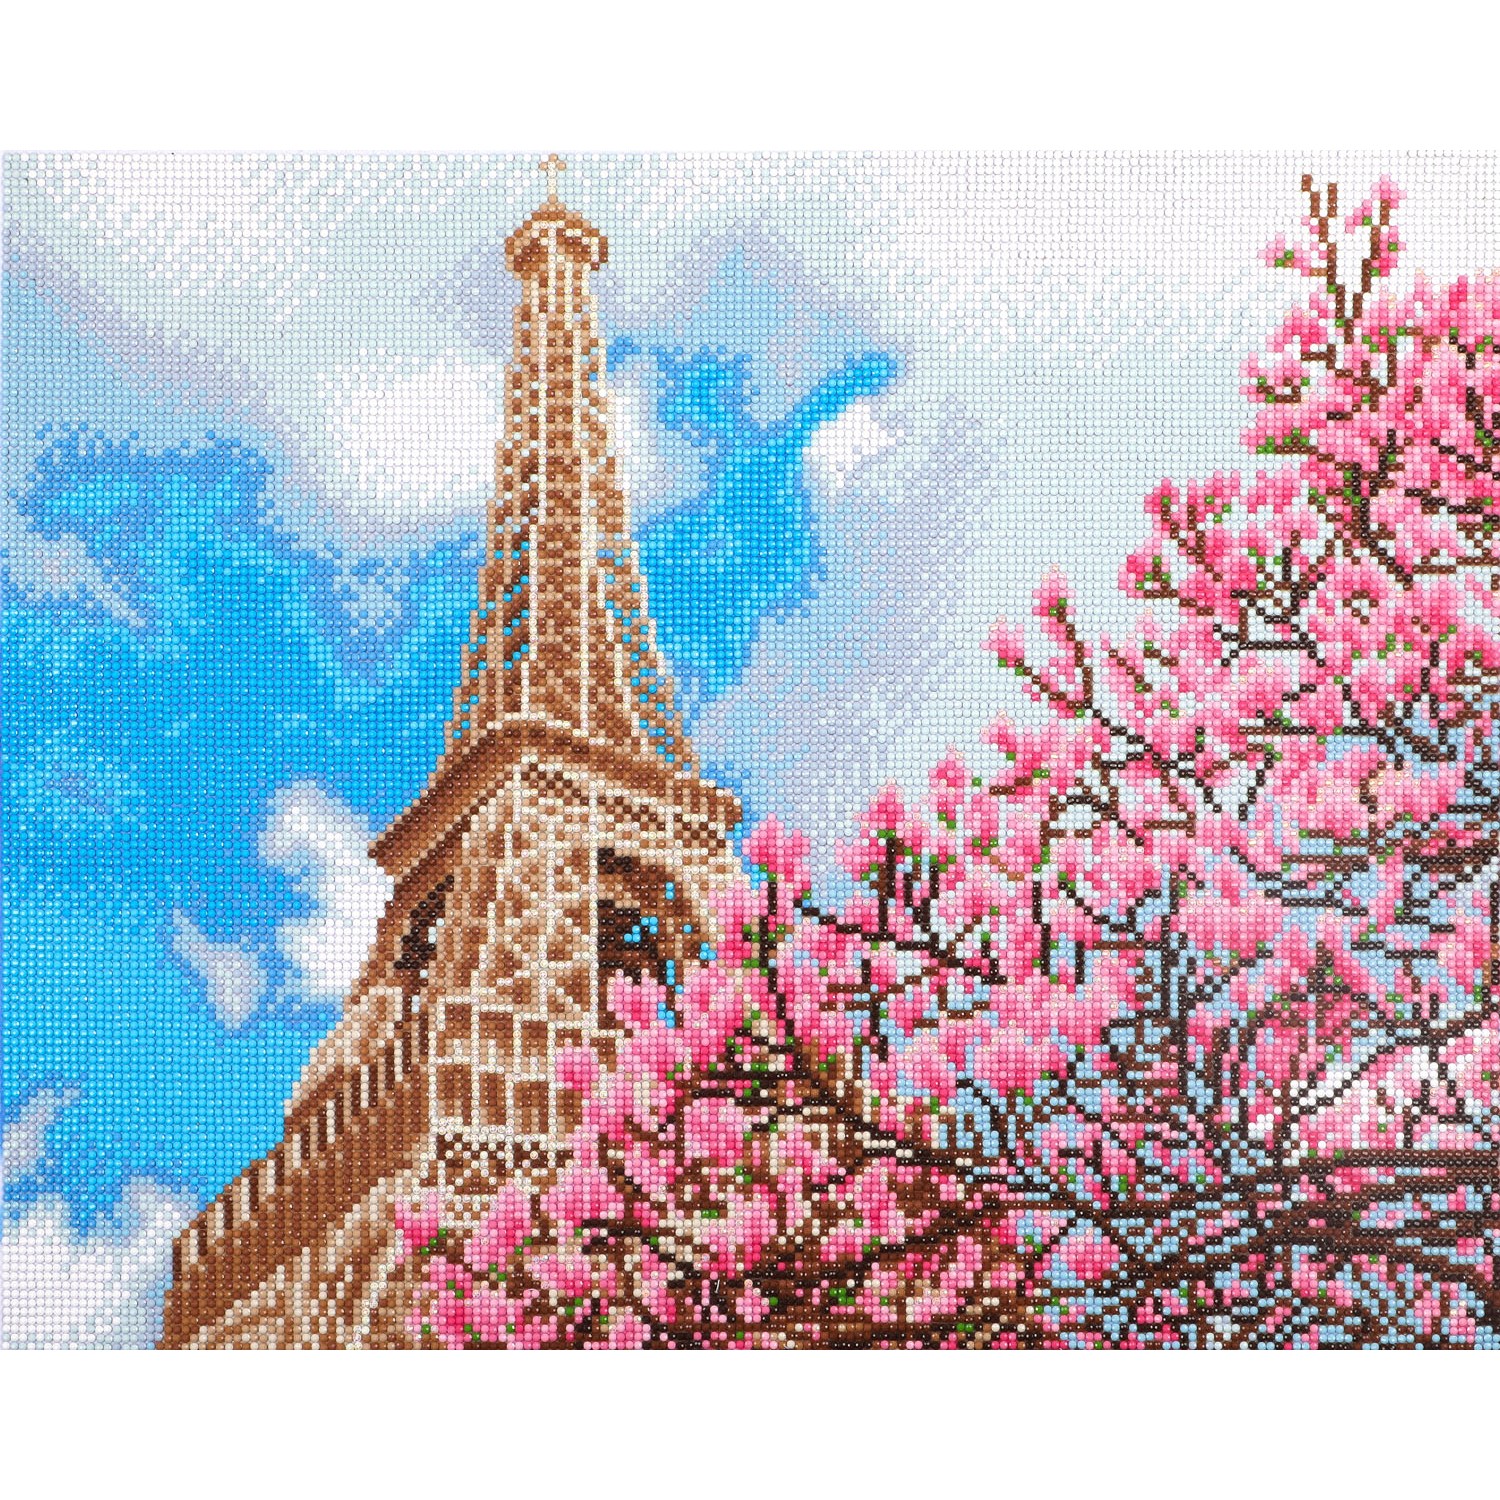 Deals Paris Eiffel Tower Diamond Painting Kits,Diamond Art Kits for  Adults,Full Drill 5d Diamond Dots Kits Gem Art for Adults Wall Home  Decor,11.8 x 15.7 inch 